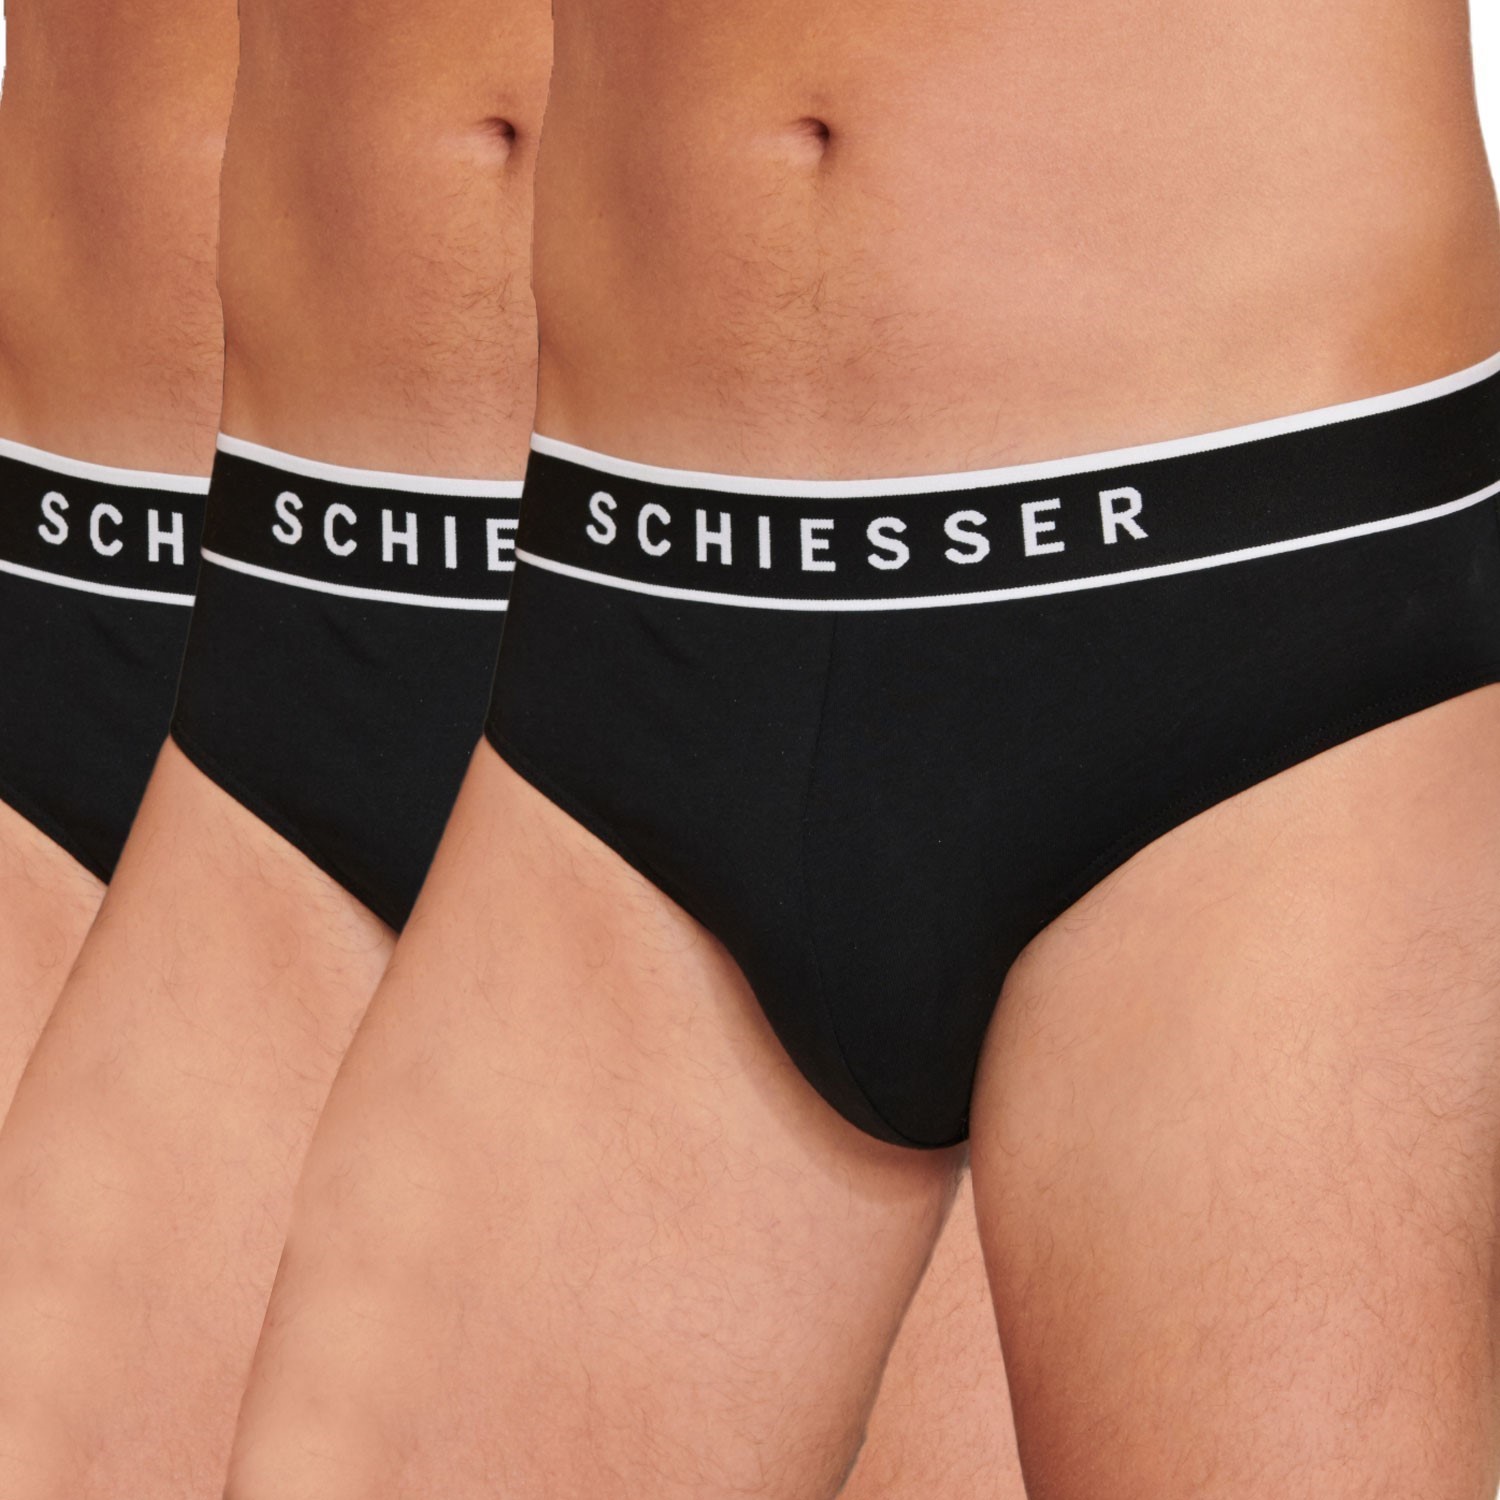 Schiesser Men's Briefs 3-Pack - Rio Briefs, Series Uncover, Logo